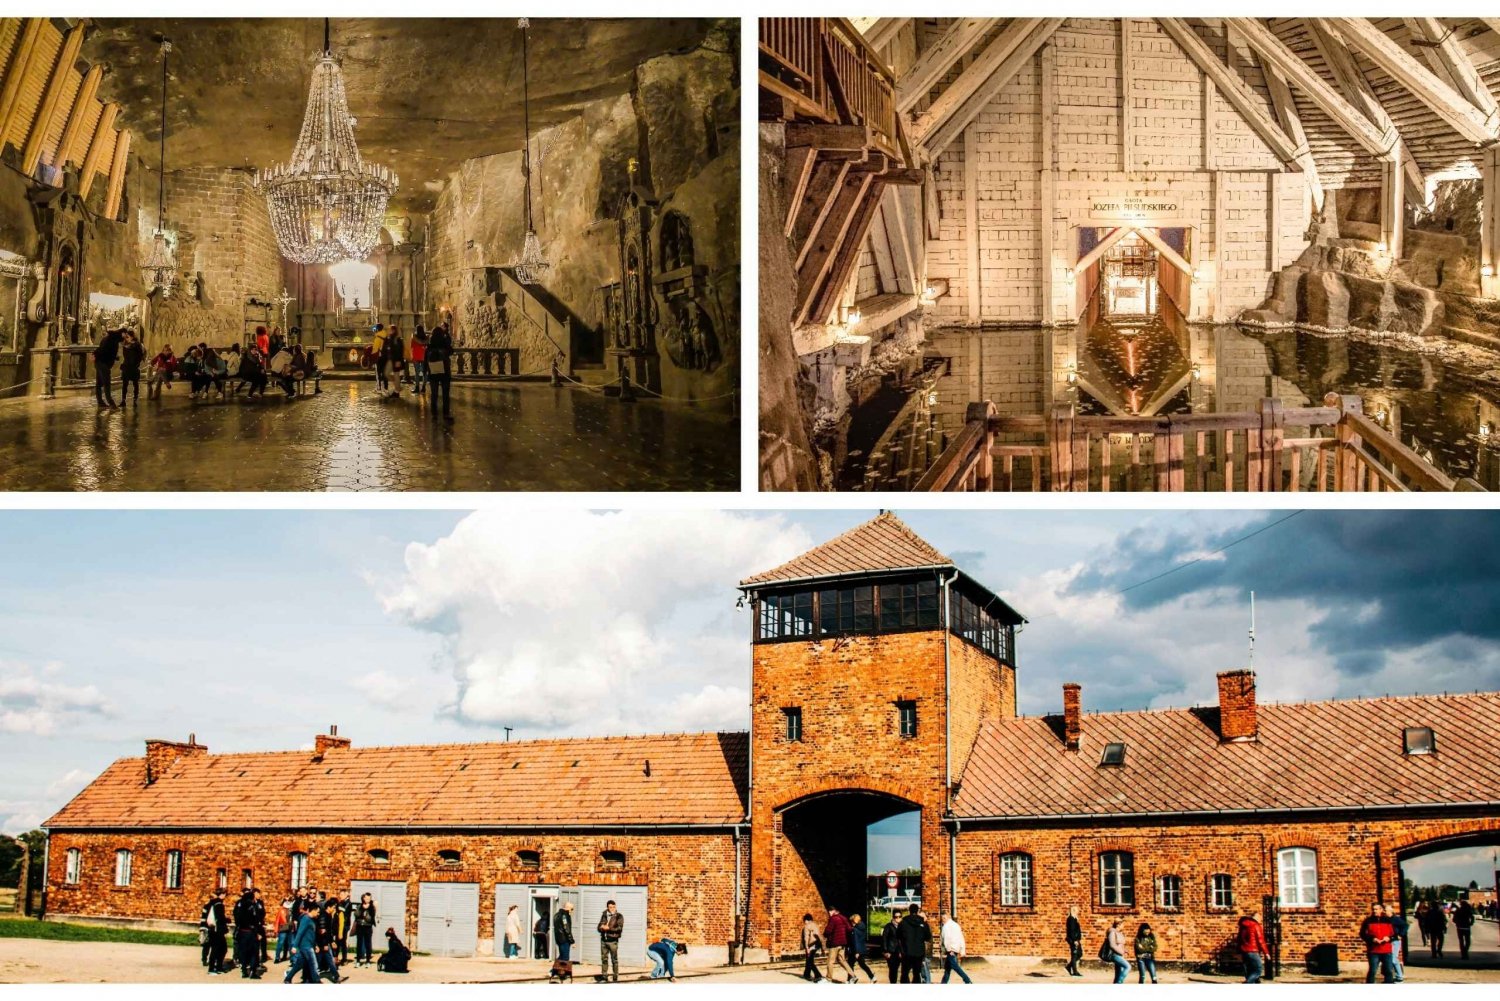 From Krakow: Auschwitz, Wieliczka Salt Mine & Pickup Options